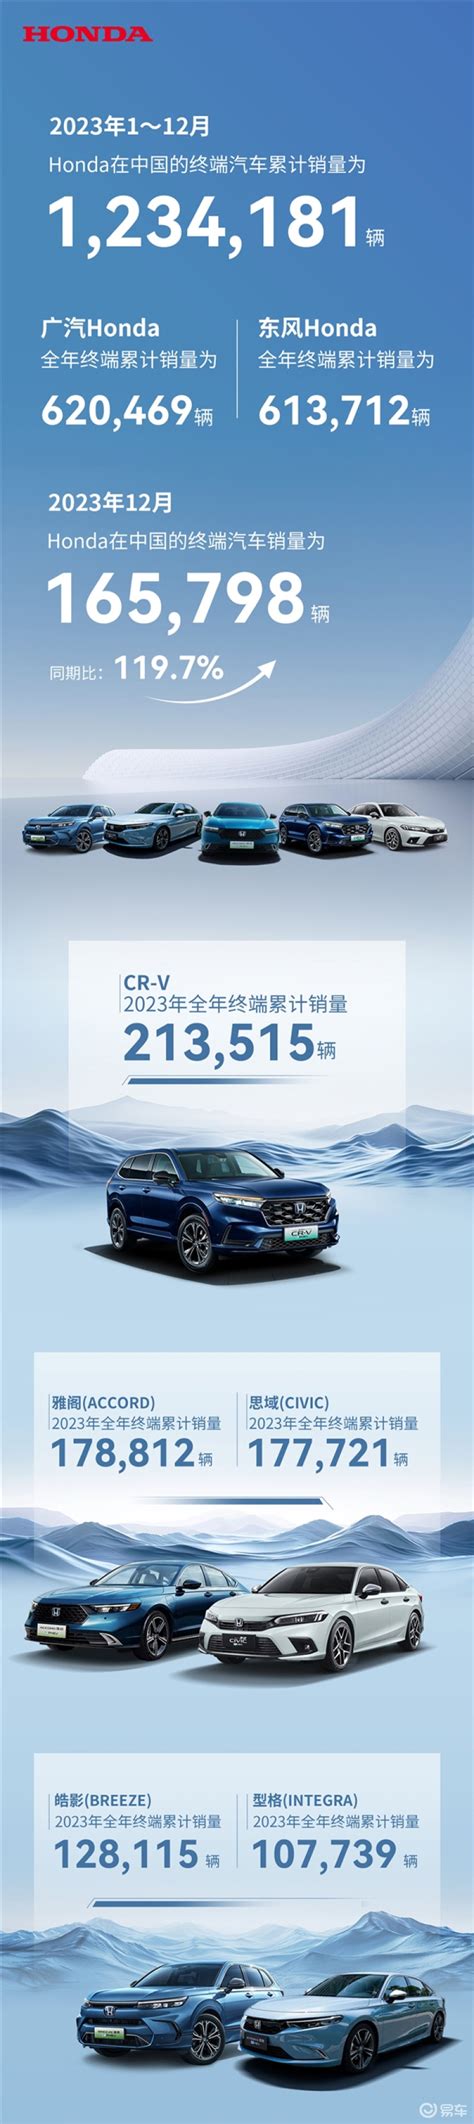 本田中国12月销量165798辆 2023年累计销量突破123万辆 - 车窗膜官网